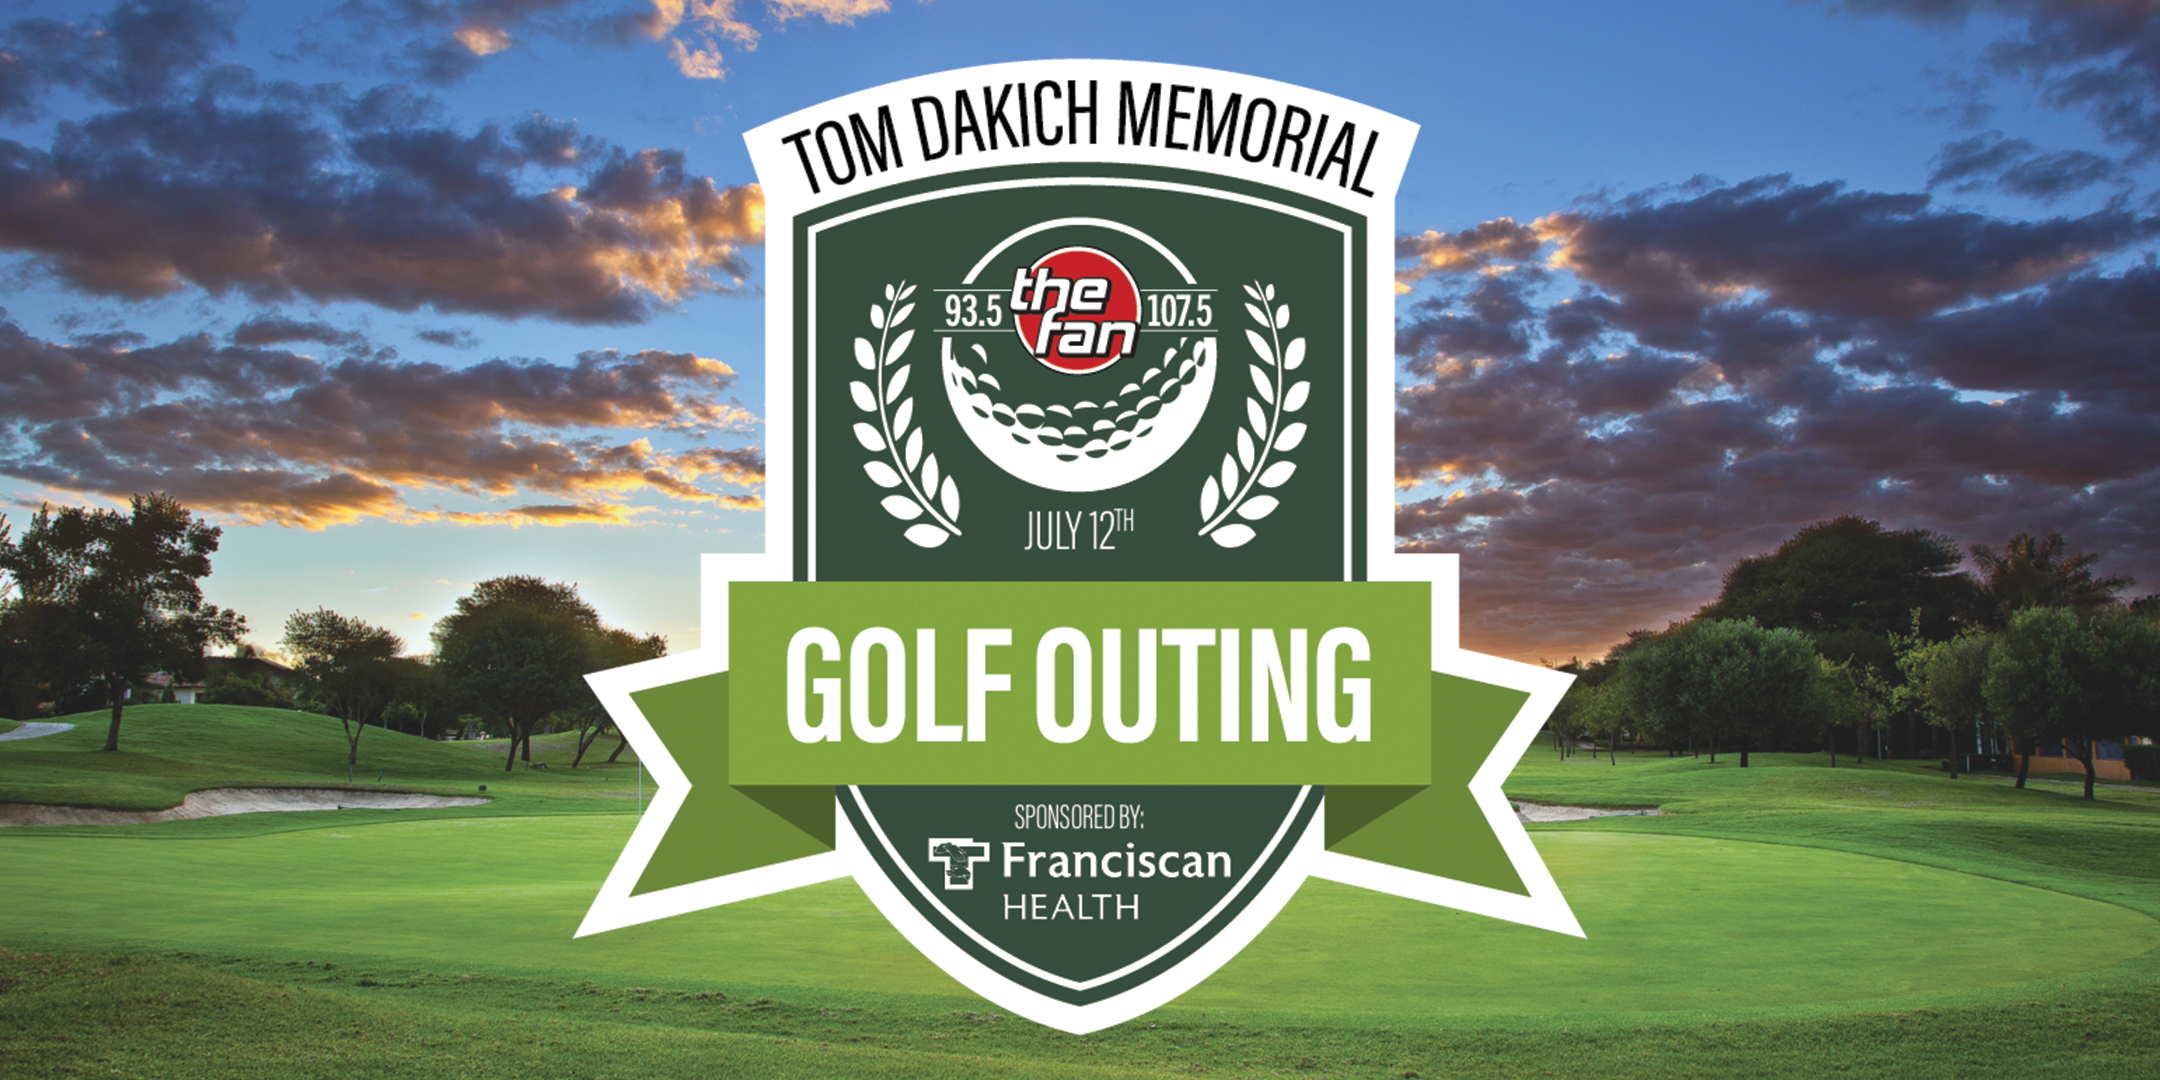 10th Annual Tom Dakich Memorial Golf Outing